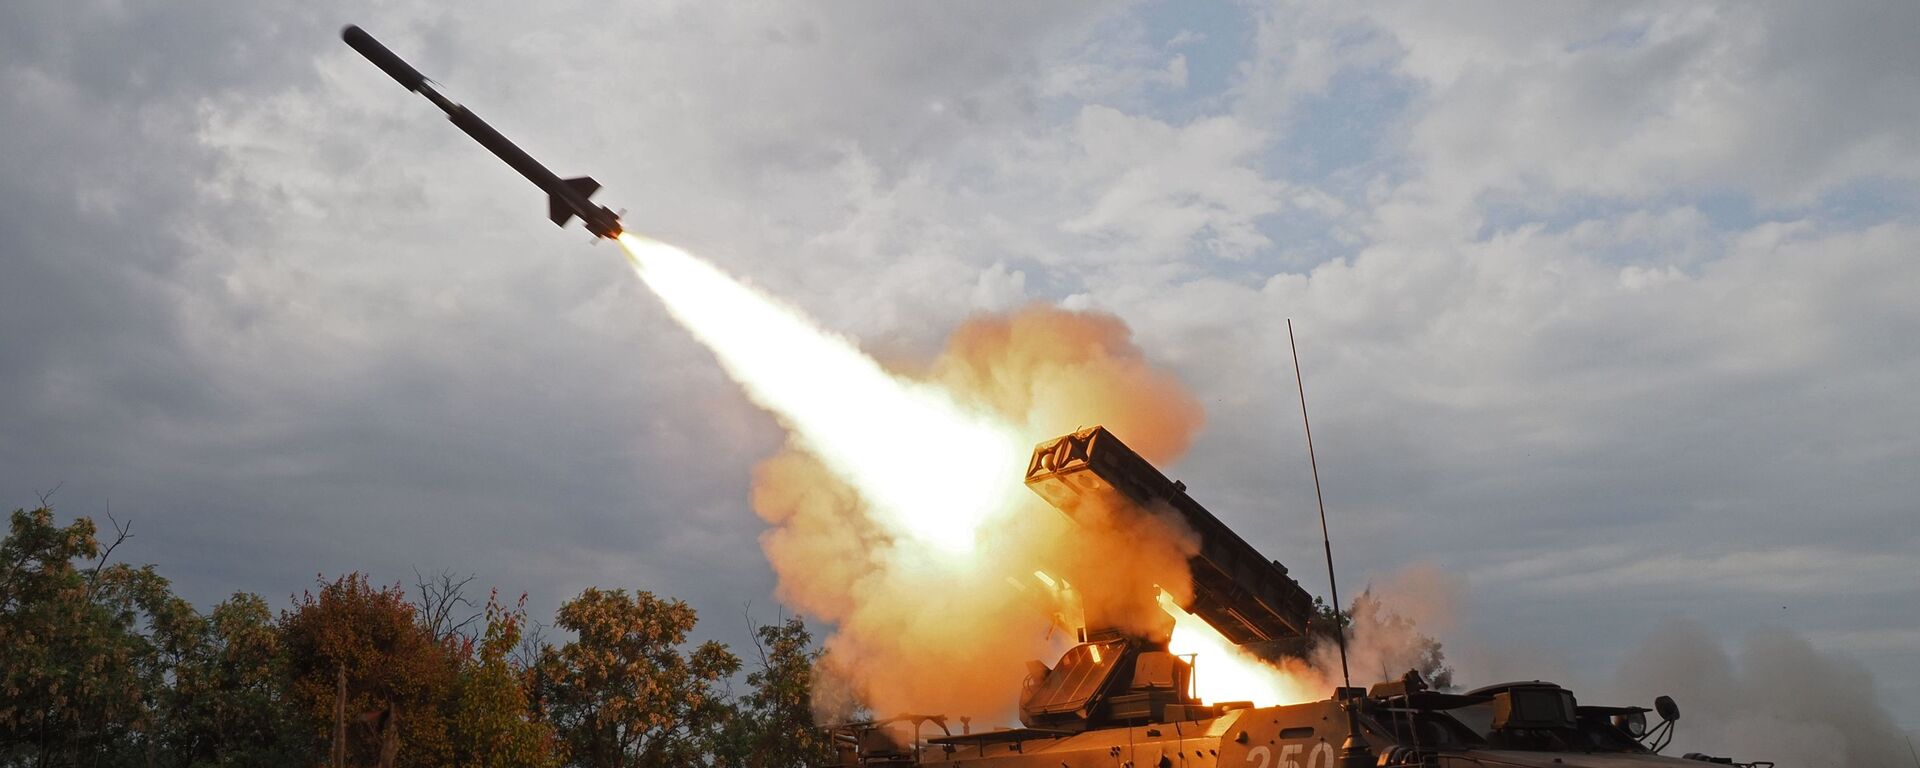 Cú phóng hệ thống tên lửa phòng không Strela-10 tại cuộc thi toàn quân Bầu trời trong lành 2018 - Sputnik Việt Nam, 1920, 24.05.2022